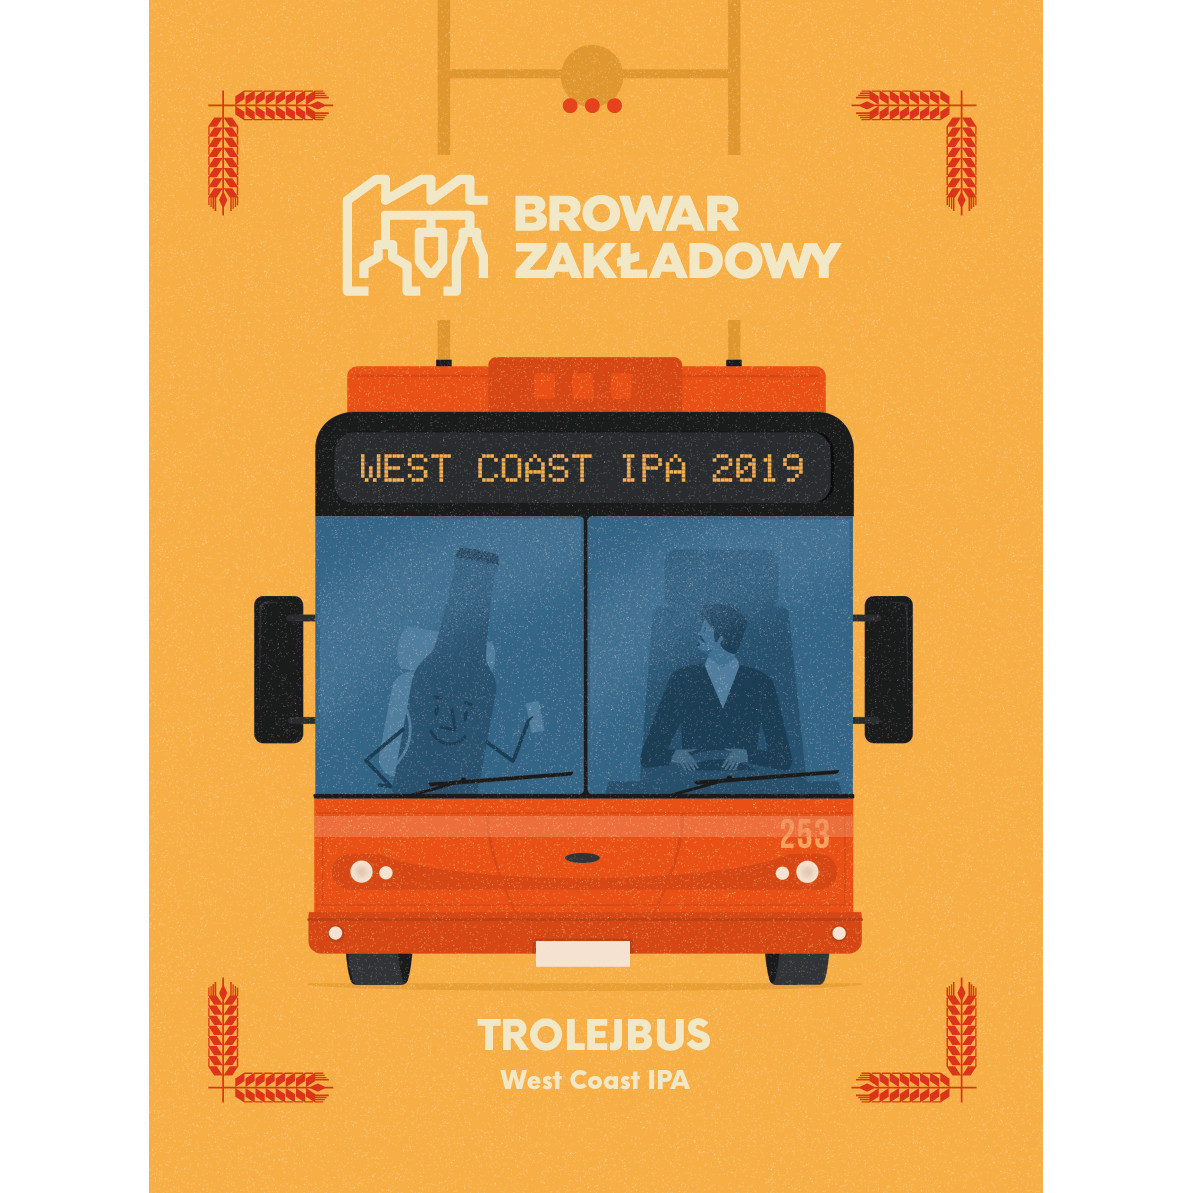 Zakładowy Trolejbus – West Coast IPA